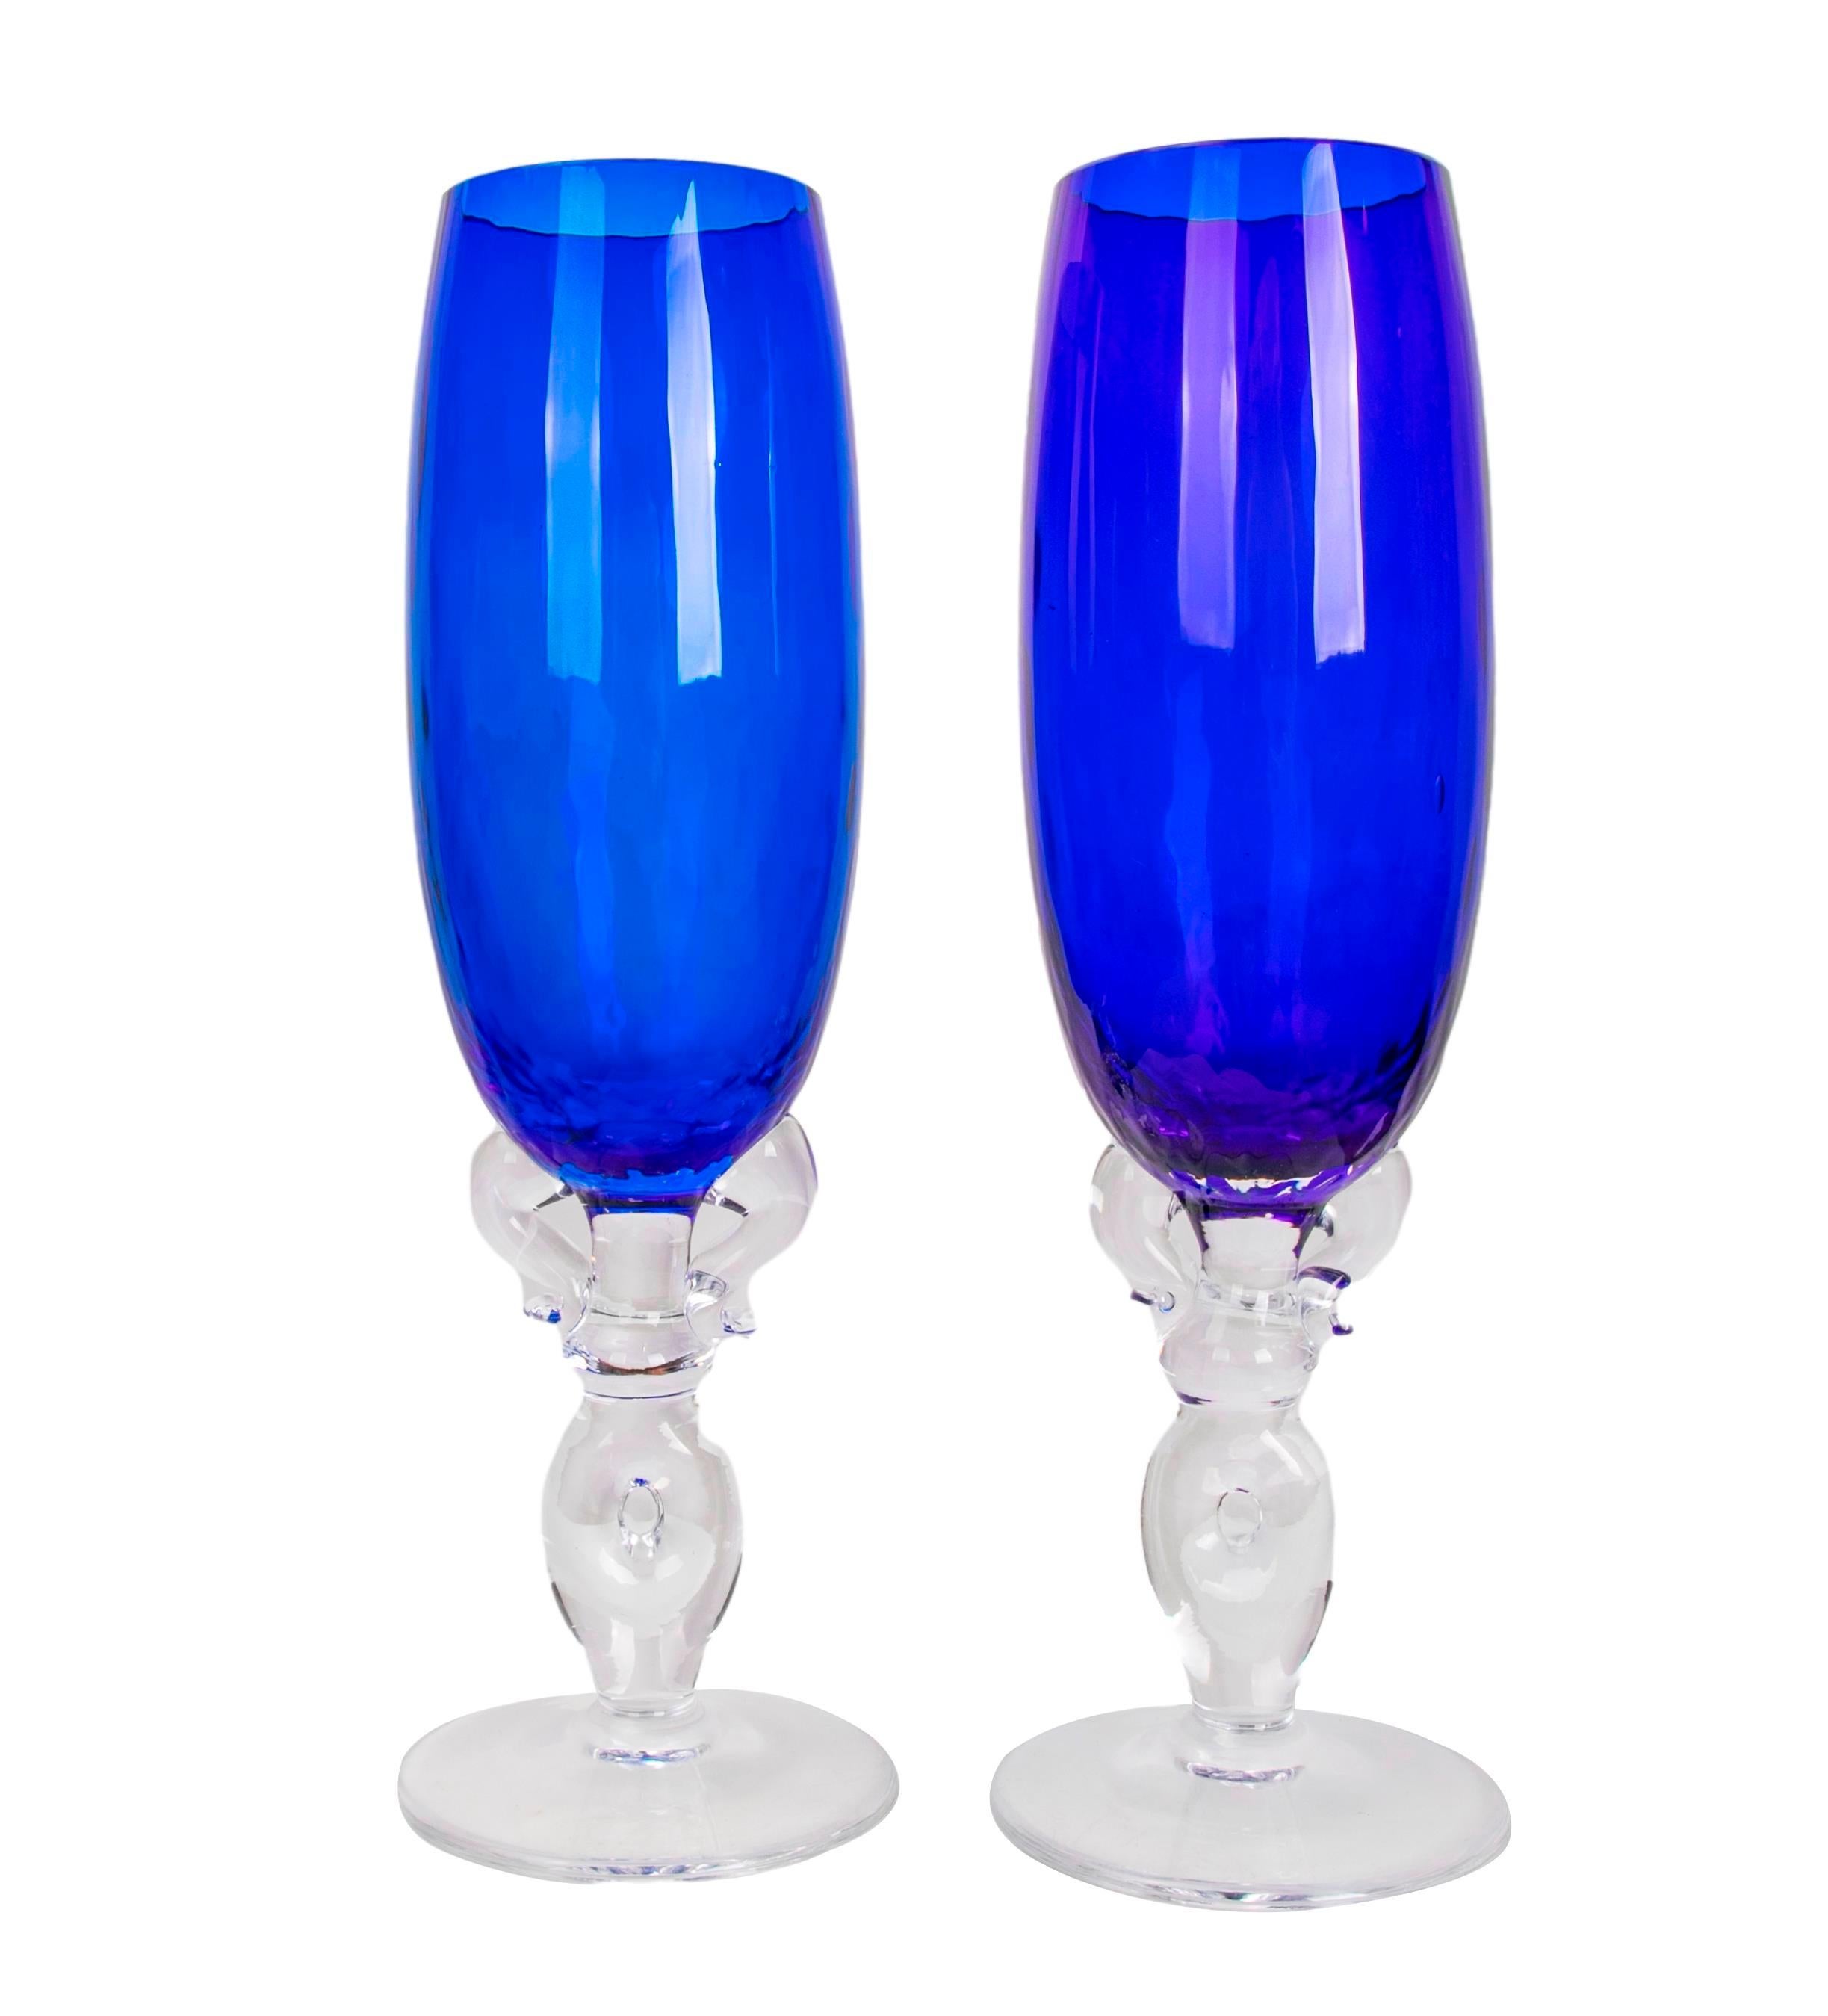 Vierunddreißig blaue Murano-Gläser für Wein und Sekt (18 Weingläser und 16 Sektgläser).